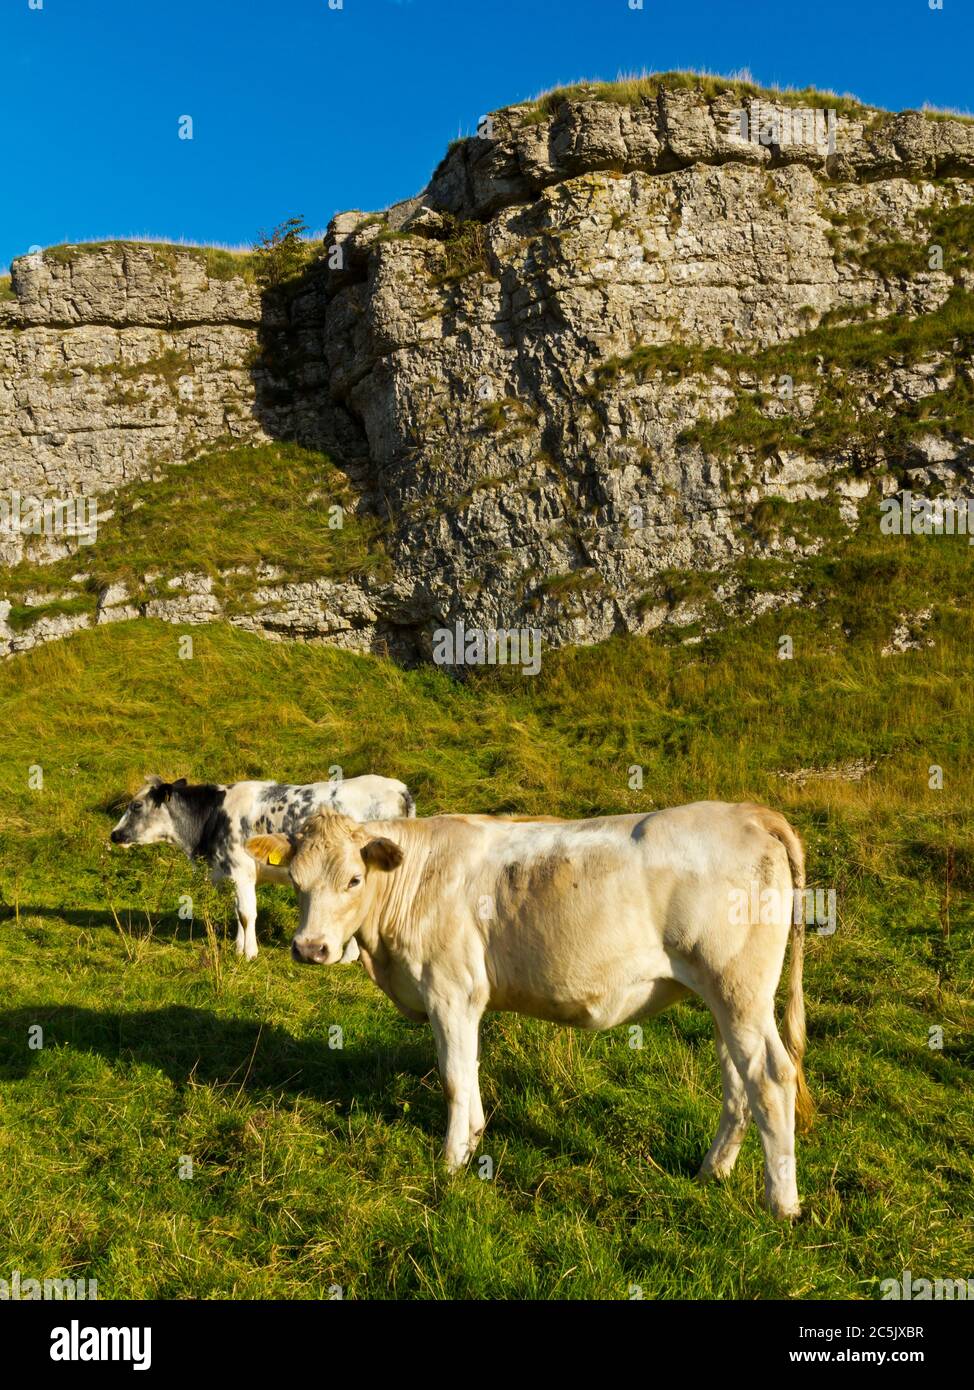 Rinder grasen in Cressbrook Dale oder Ravensdale eine trockene Karbonifus Schlucht in der Nähe von Bakewell im Peak District National Park Derbyshire England Stockfoto